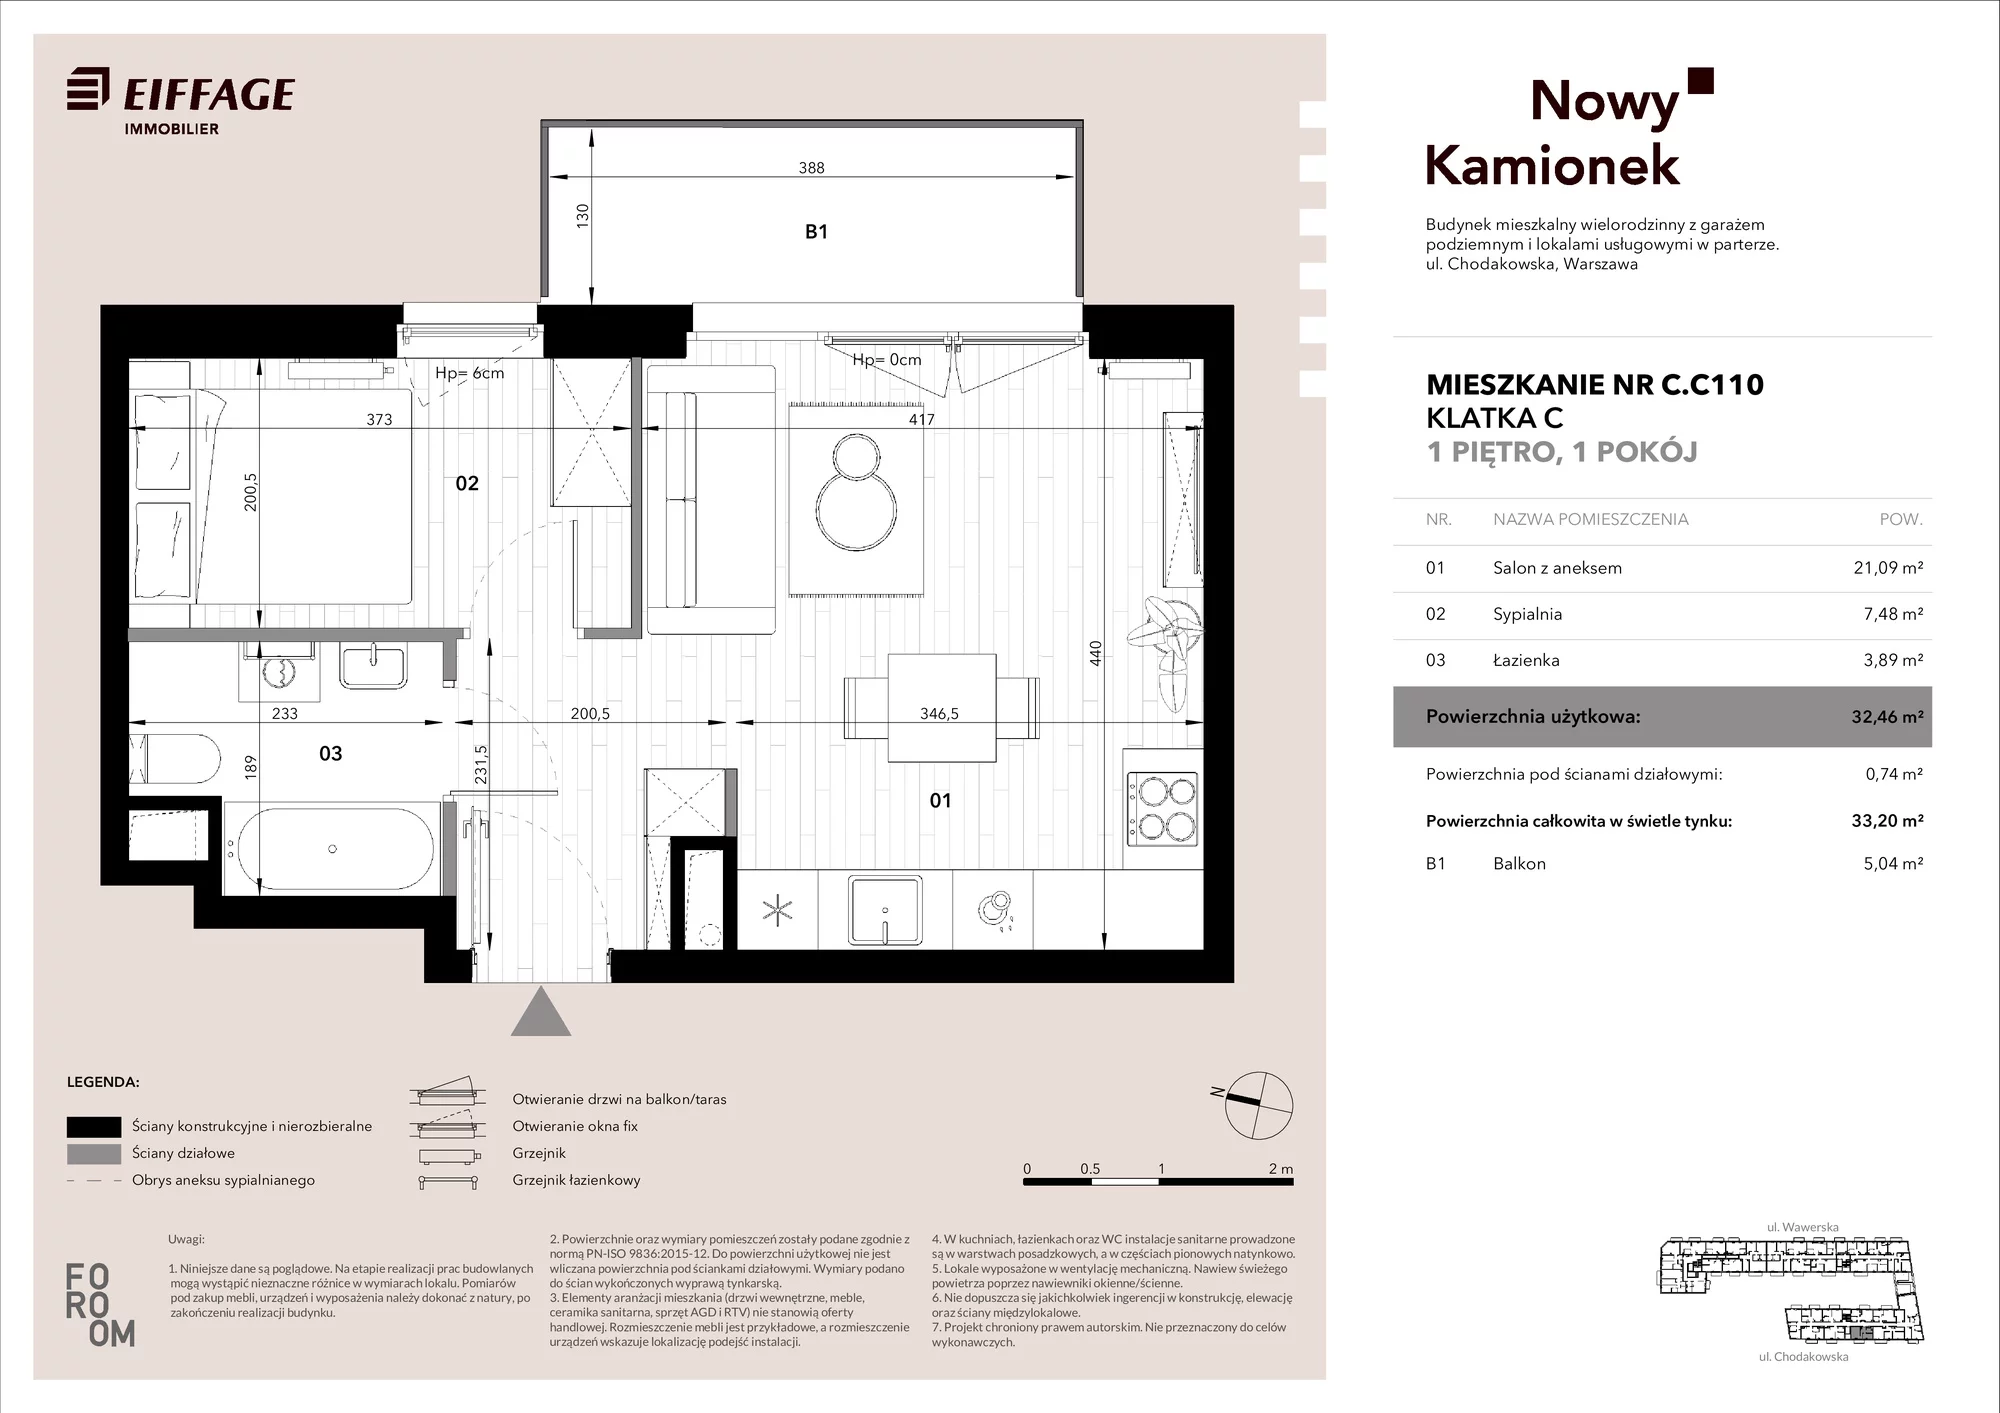 Mieszkanie 32,46 m², piętro 1, oferta nr C.C110, Nowy Kamionek, Warszawa, Praga Południe, Kamionek, ul. Chodakowska